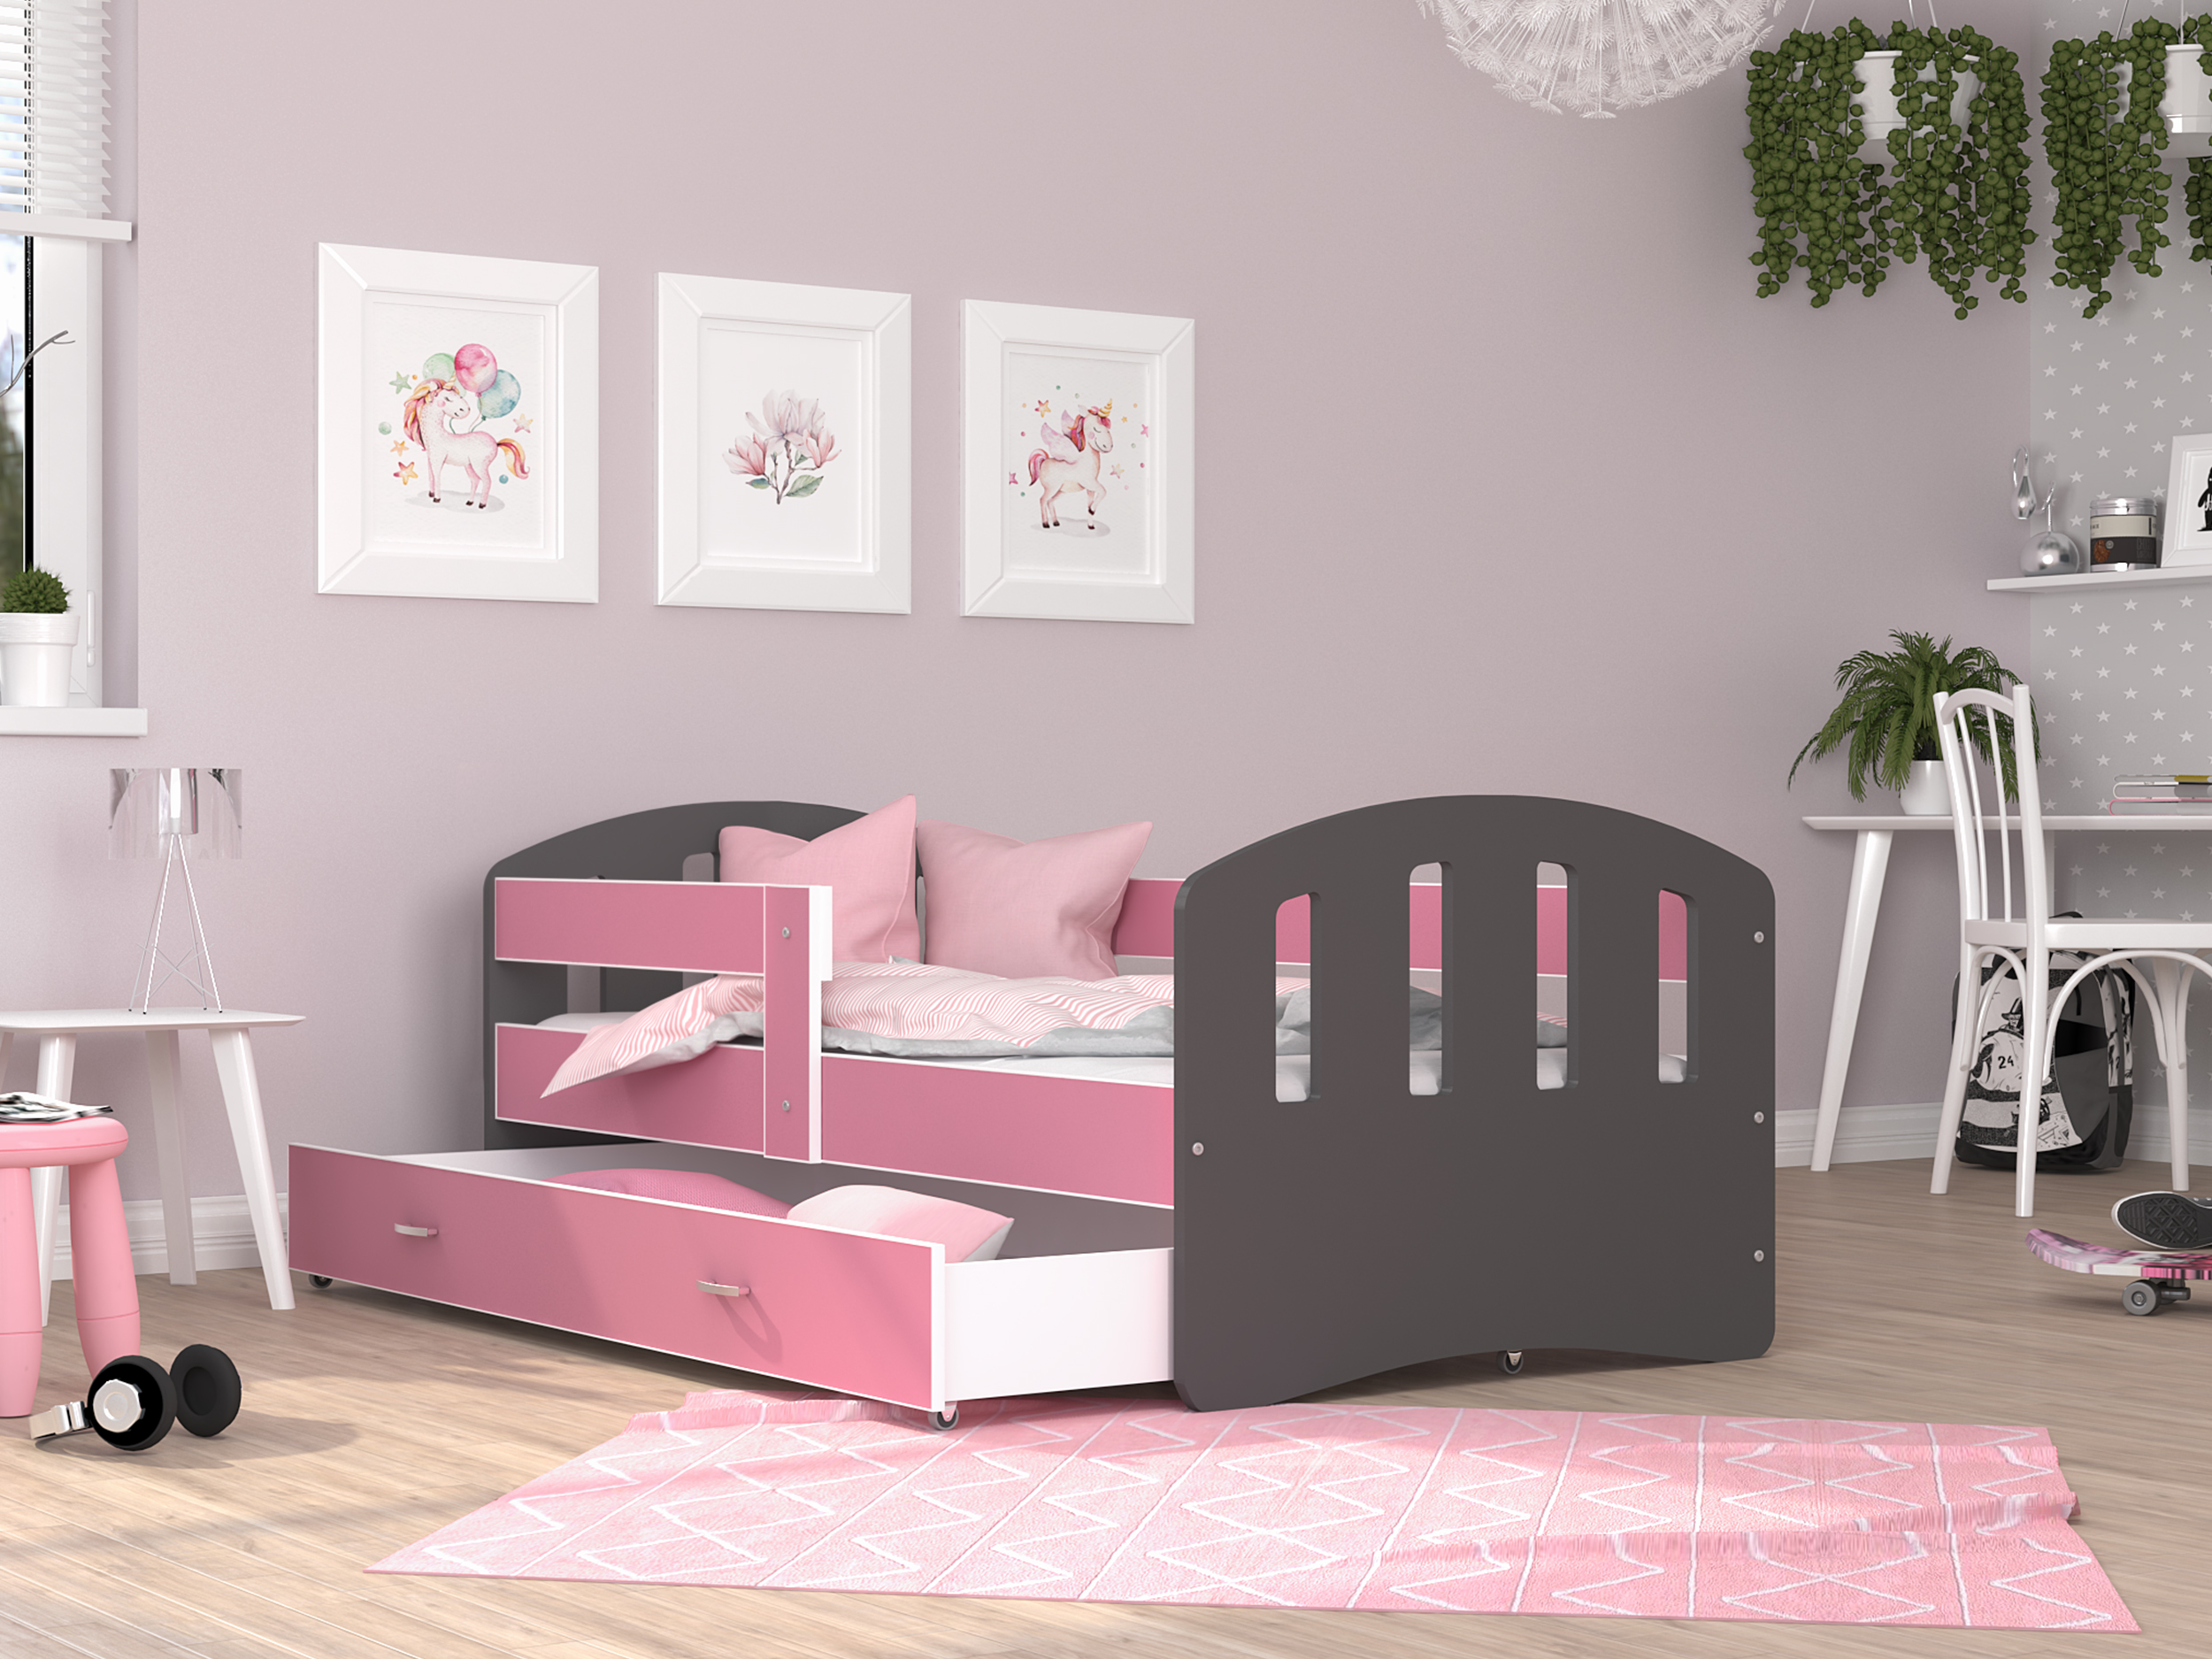 Dětská postel HAPPY 140x80 barevná RŮŽOVÁ-ŠEDÁ